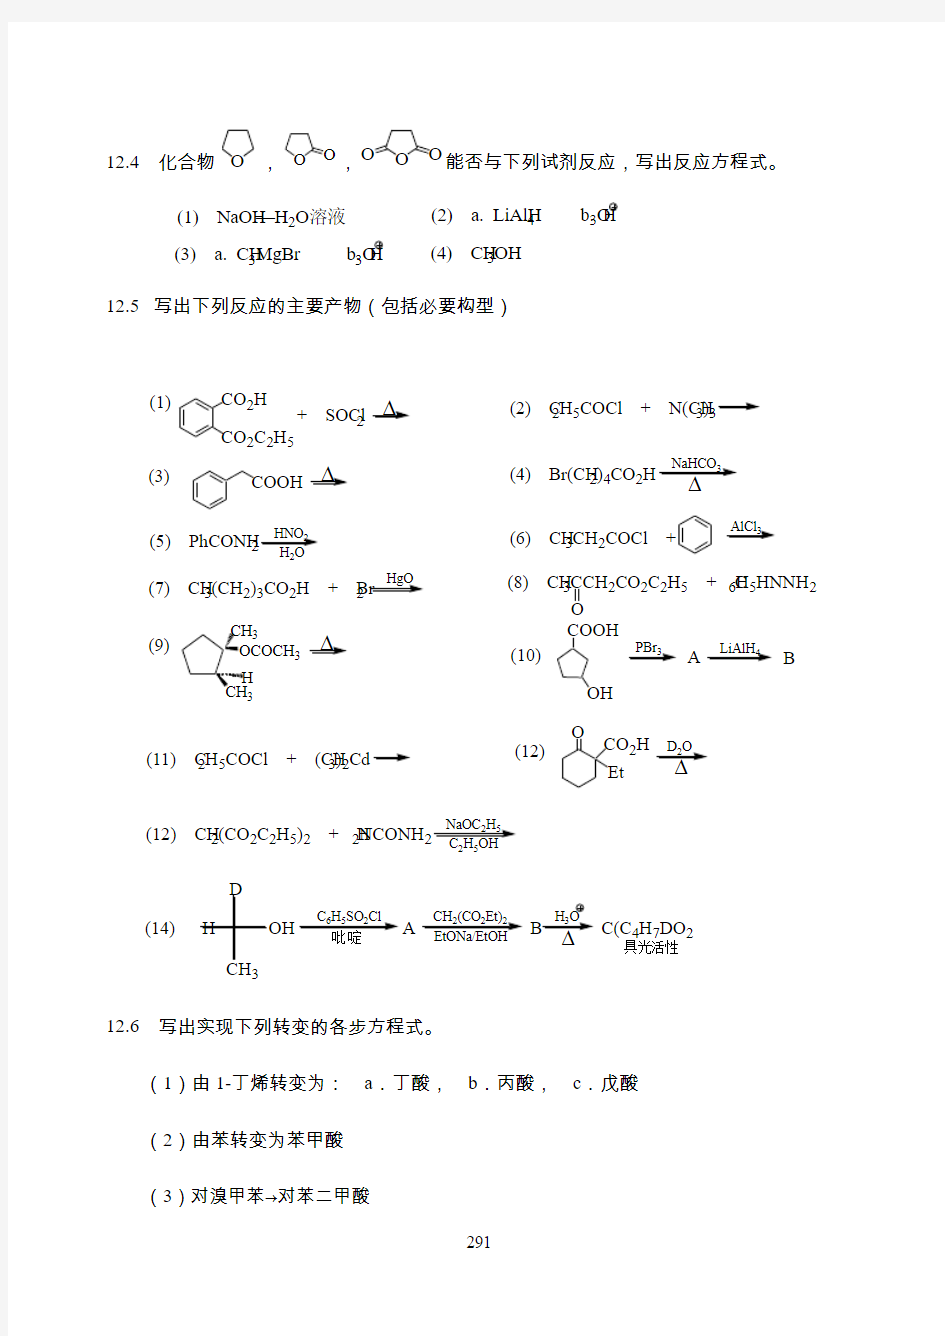 羧酸及其衍生物(习题)